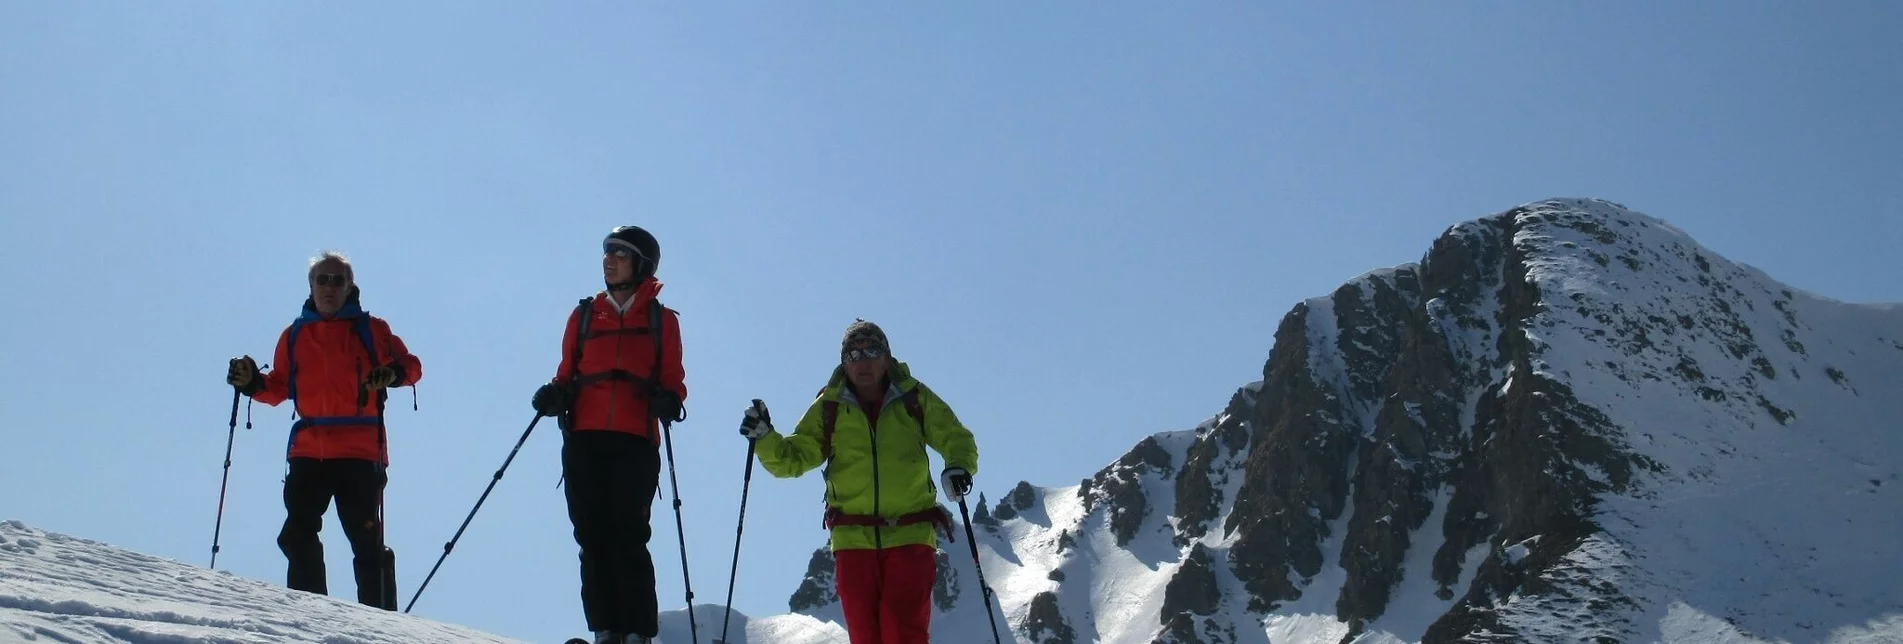 Skitour Sonntagskogel, auch von Montag bis Samstag eine lässige Tour! - Touren-Impression #1 | © Erlebnisregion Murtal